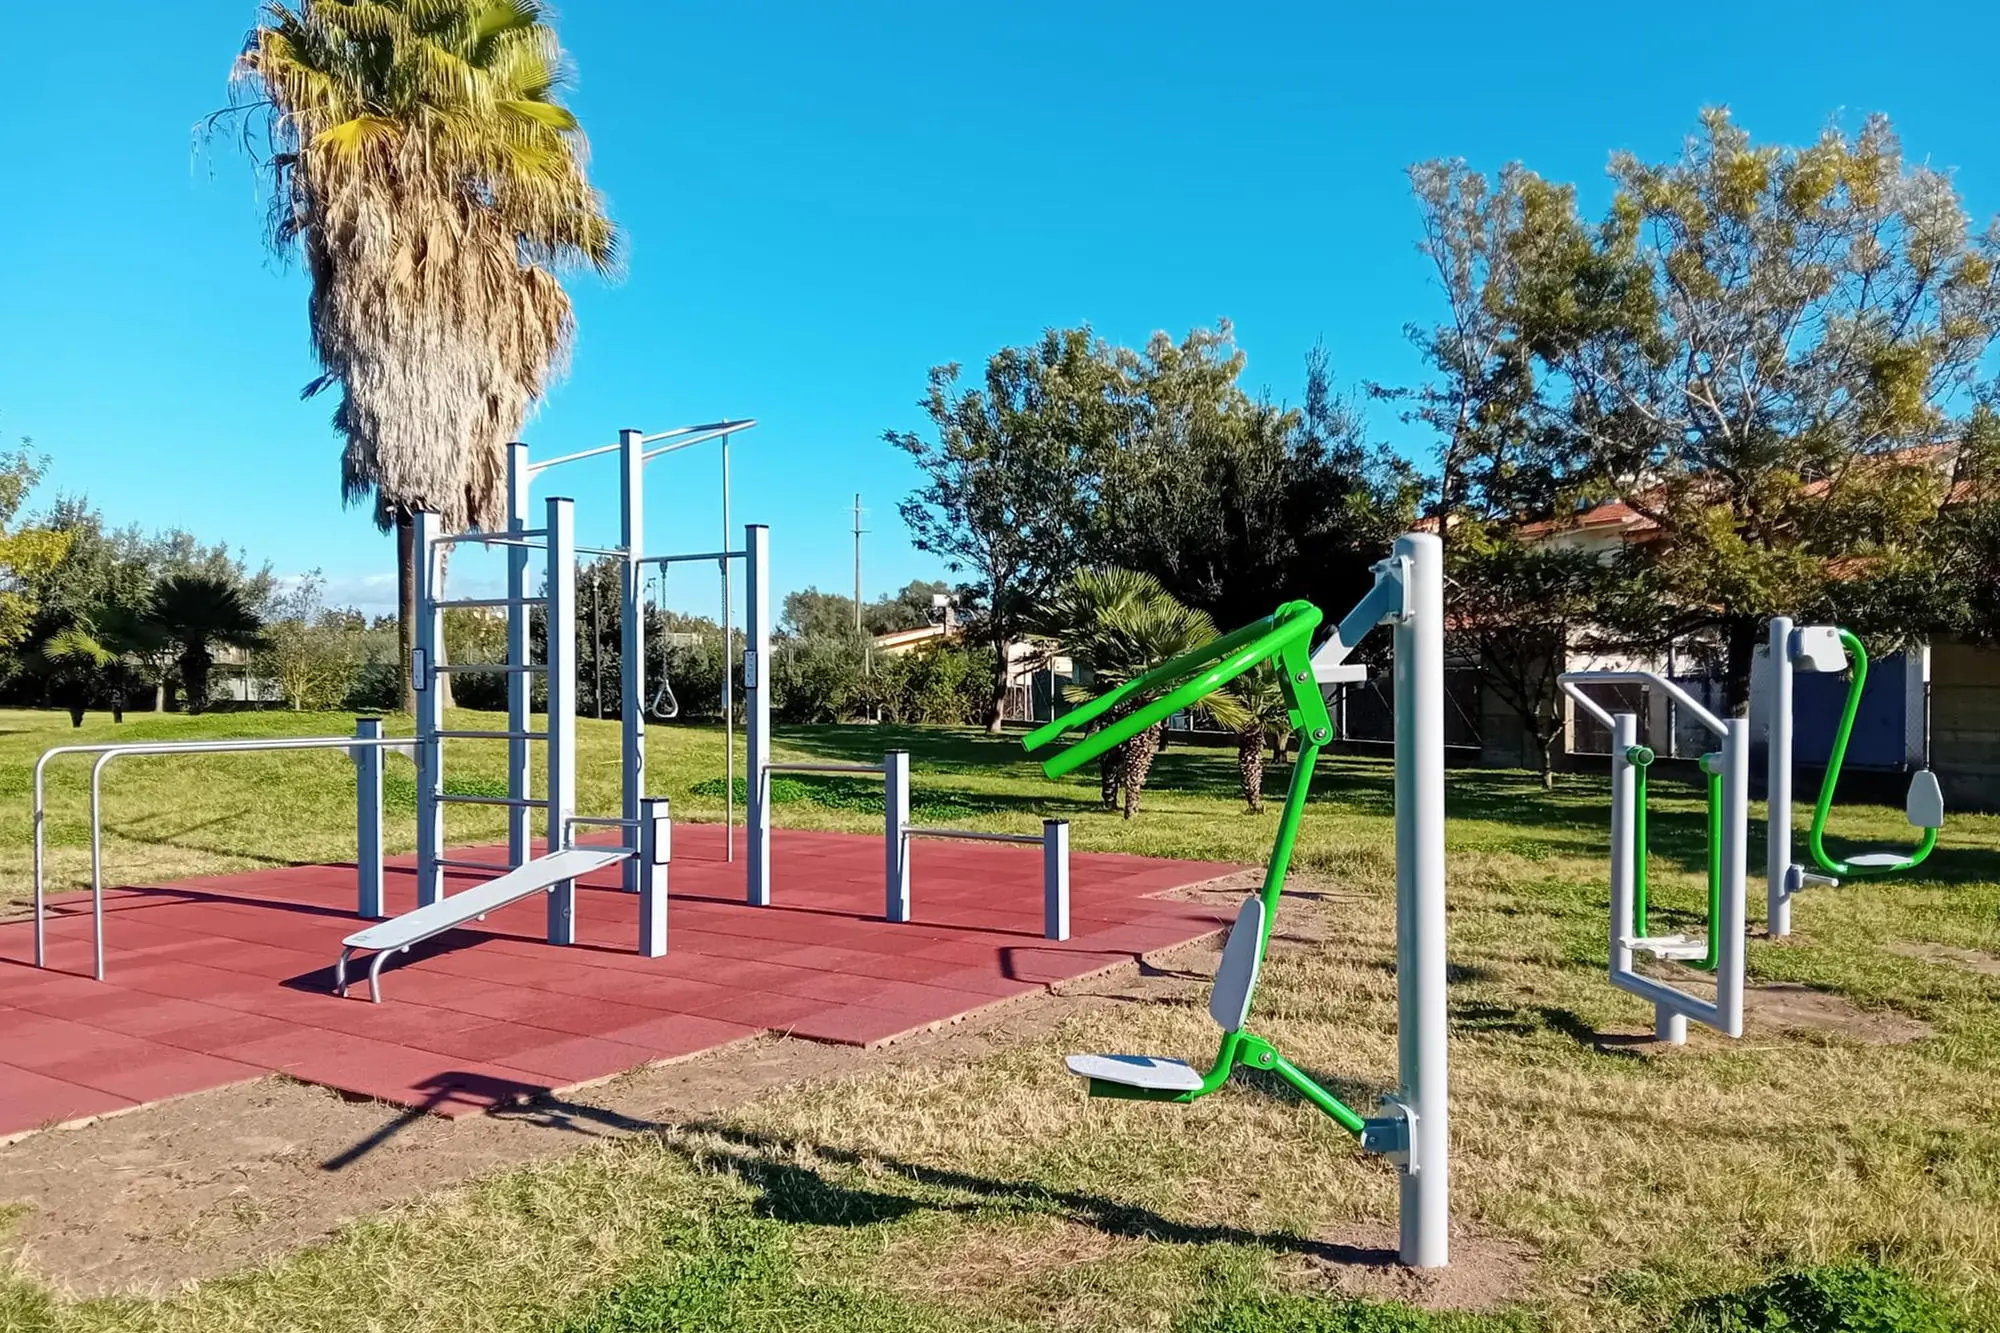 La nuova area fitness all'interno del parco comunale di Palmas Arborea (foto concessa)